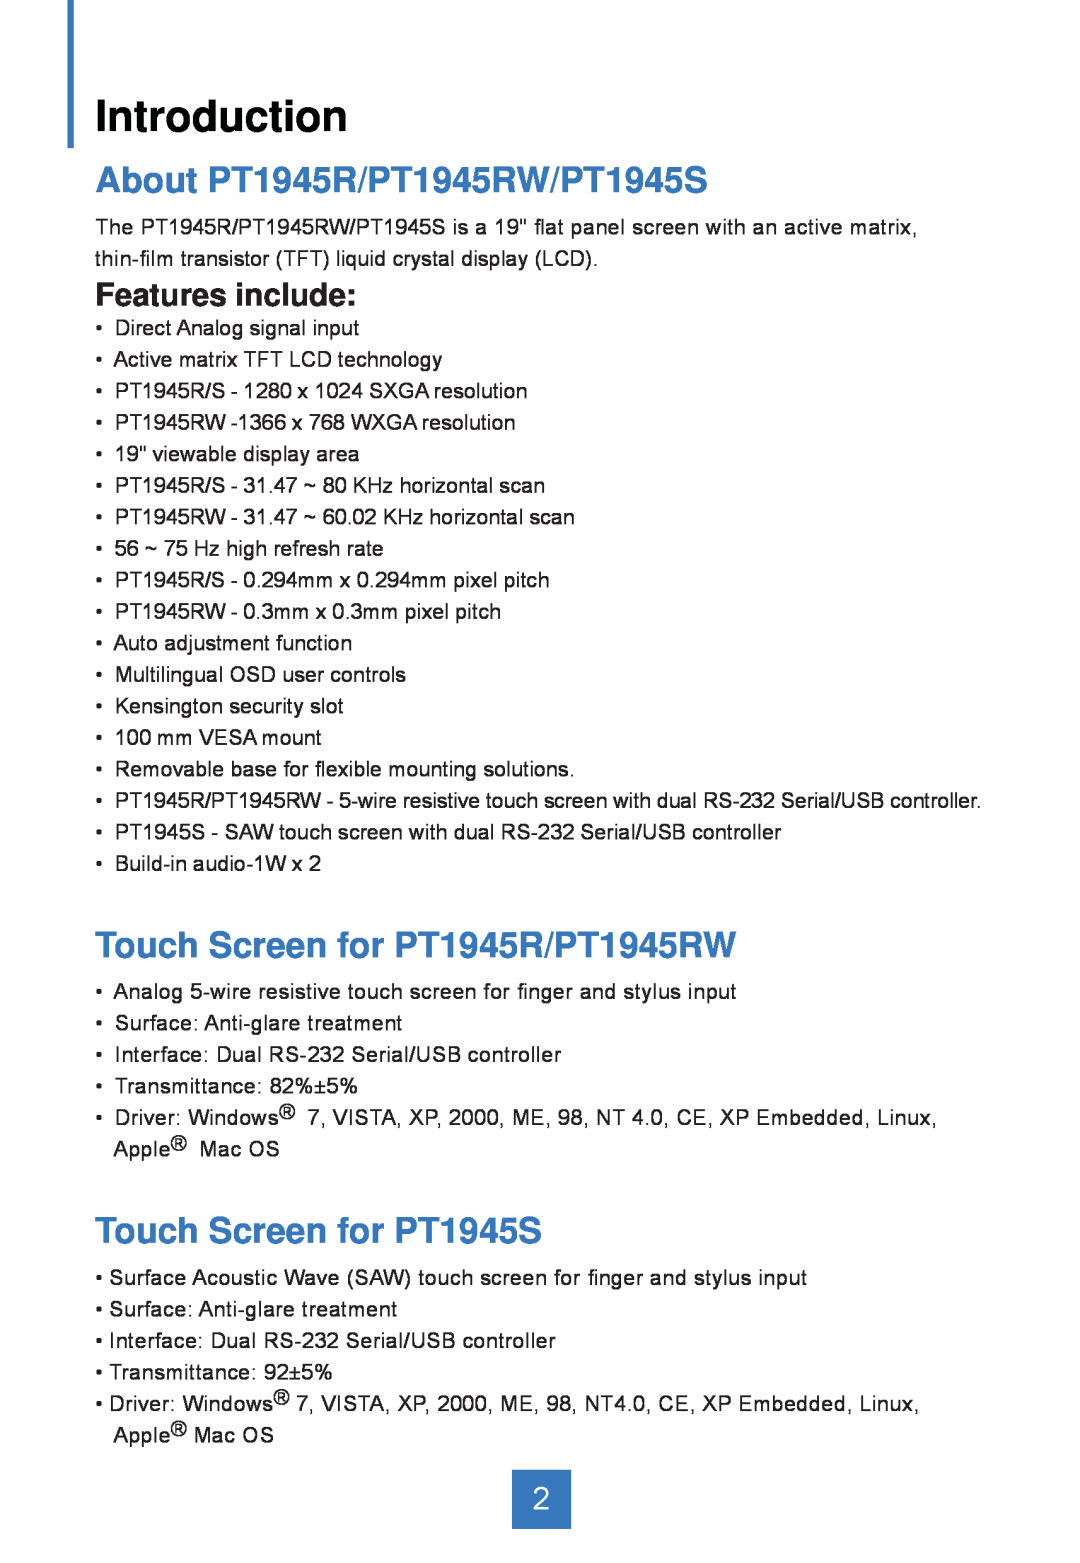 Planar manual Introduction, About PT1945R/PT1945RW/PT1945S, Touch Screen for PT1945R/PT1945RW, Touch Screen for PT1945S 